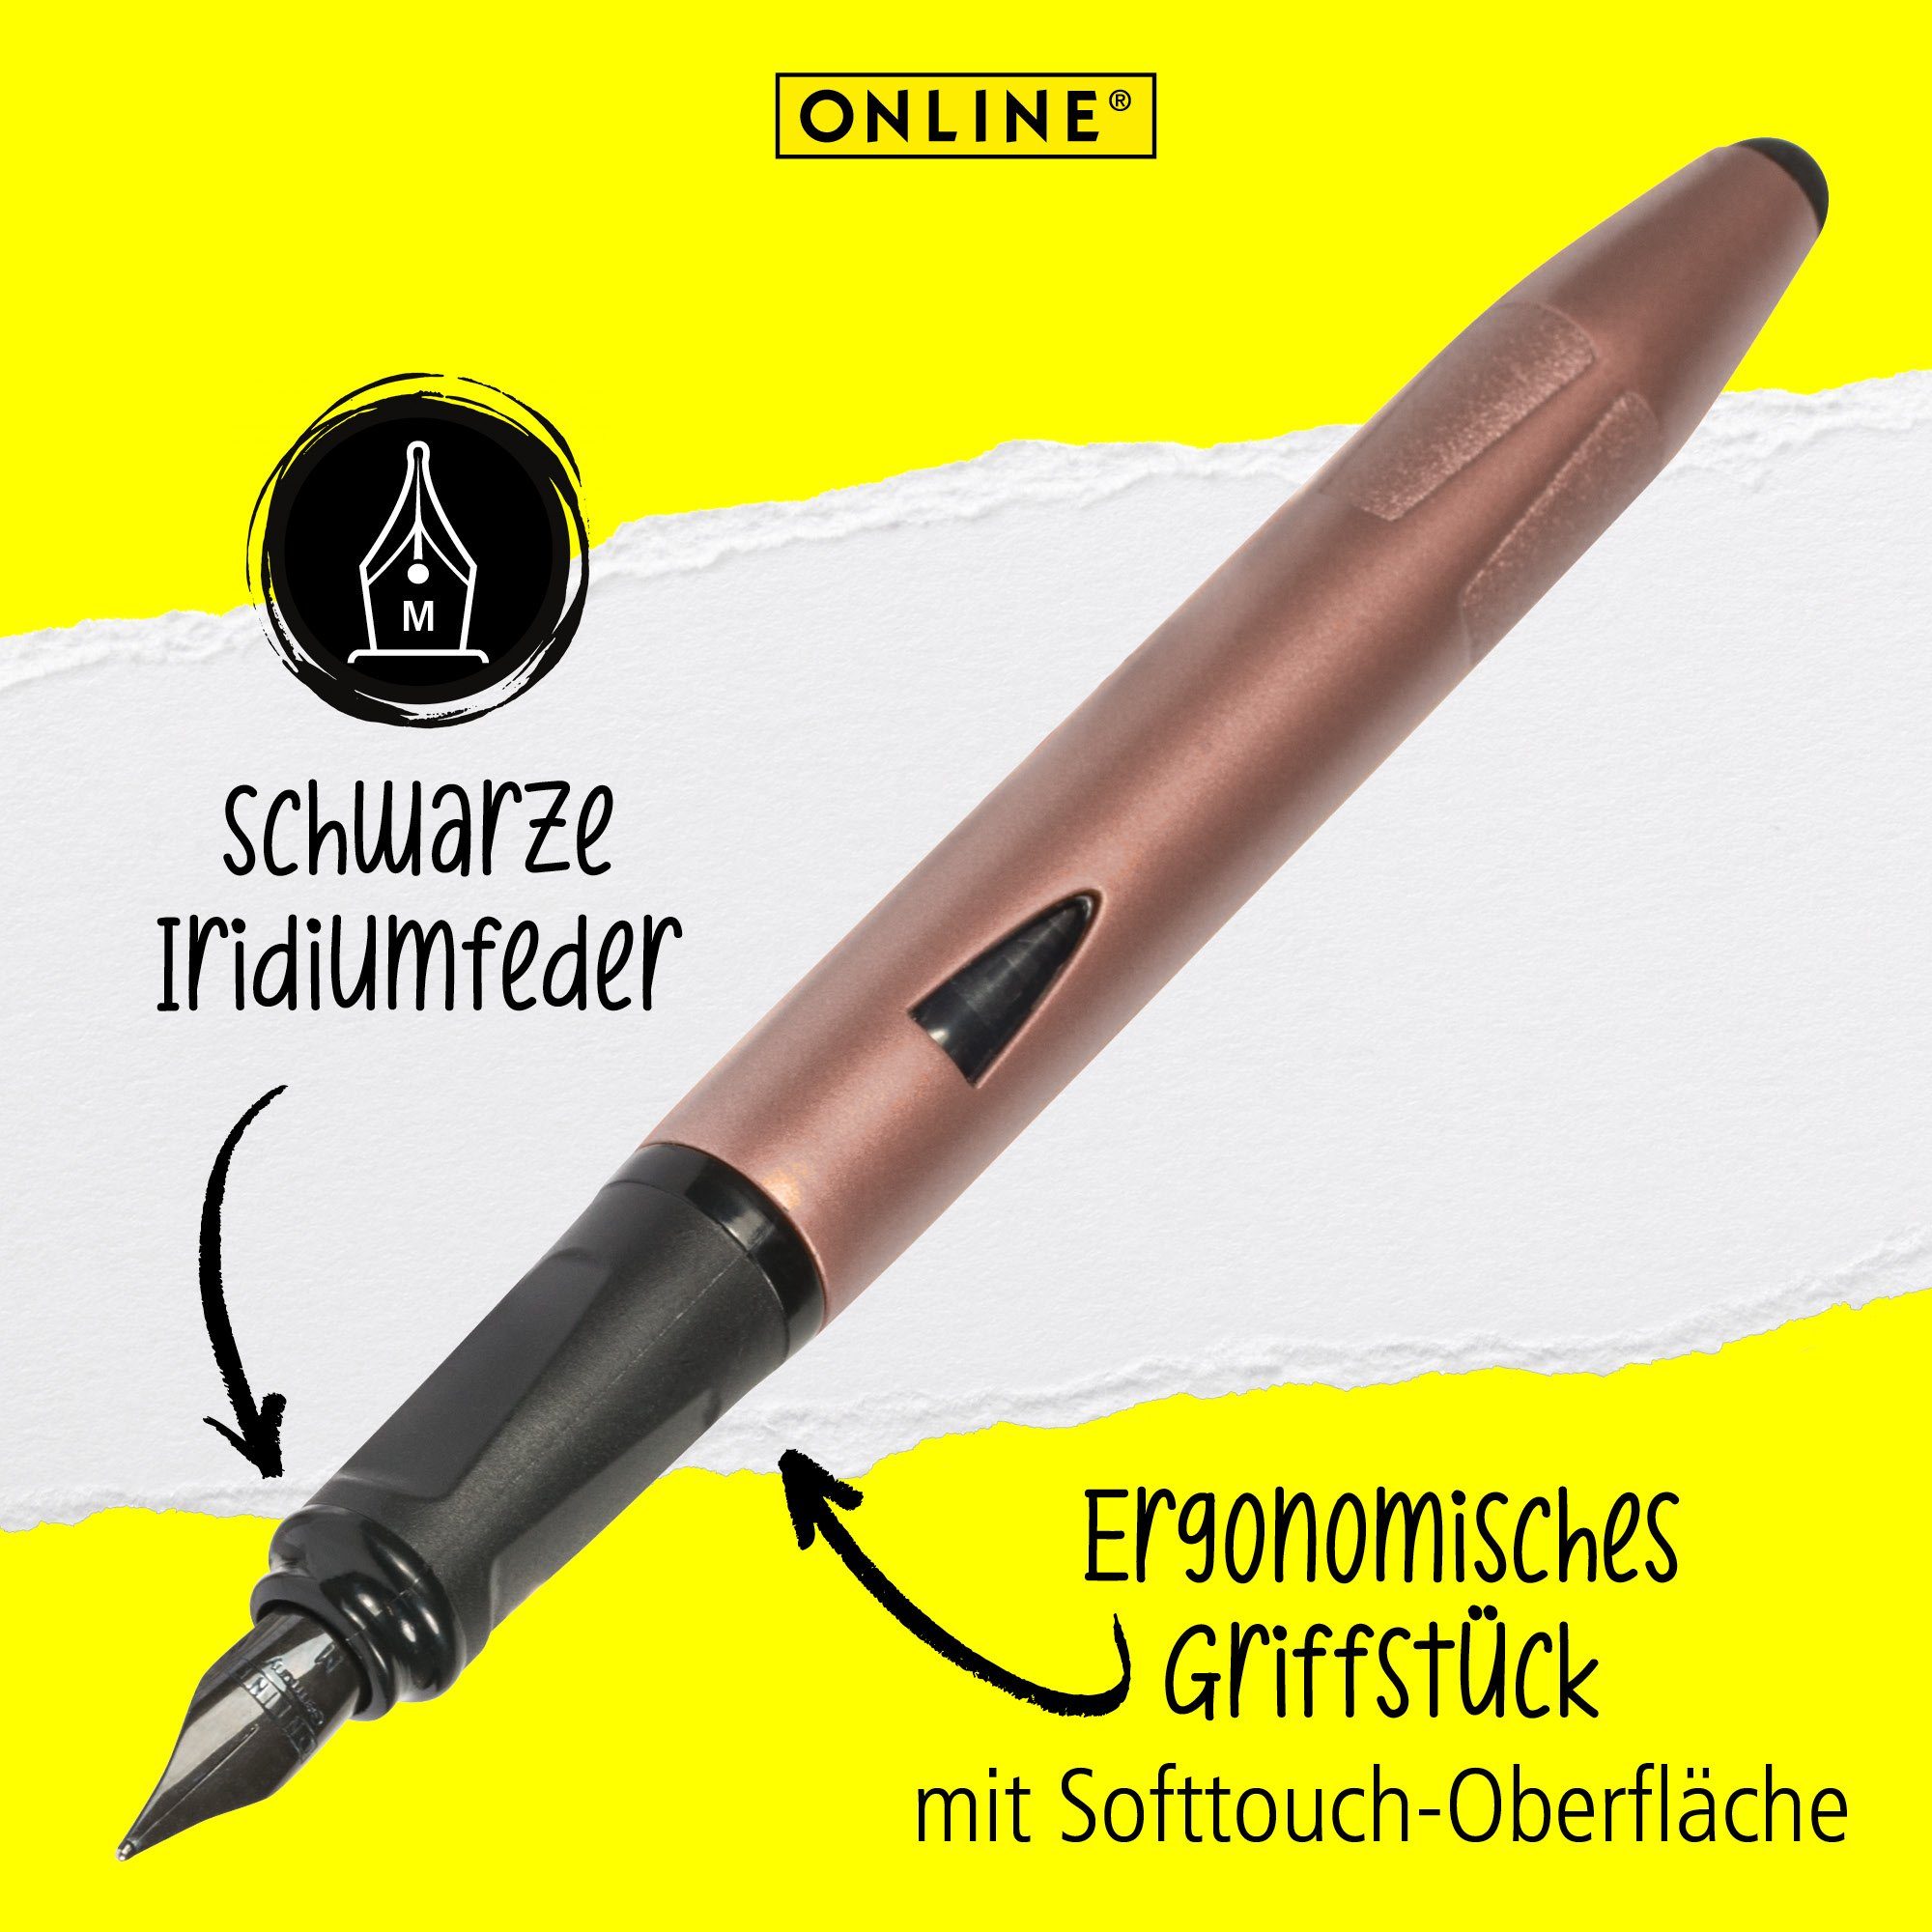 Schule, für die mit Switch Füller Rosegold Stylus-Tip Plus, ideal Pen ergonomisch, Online